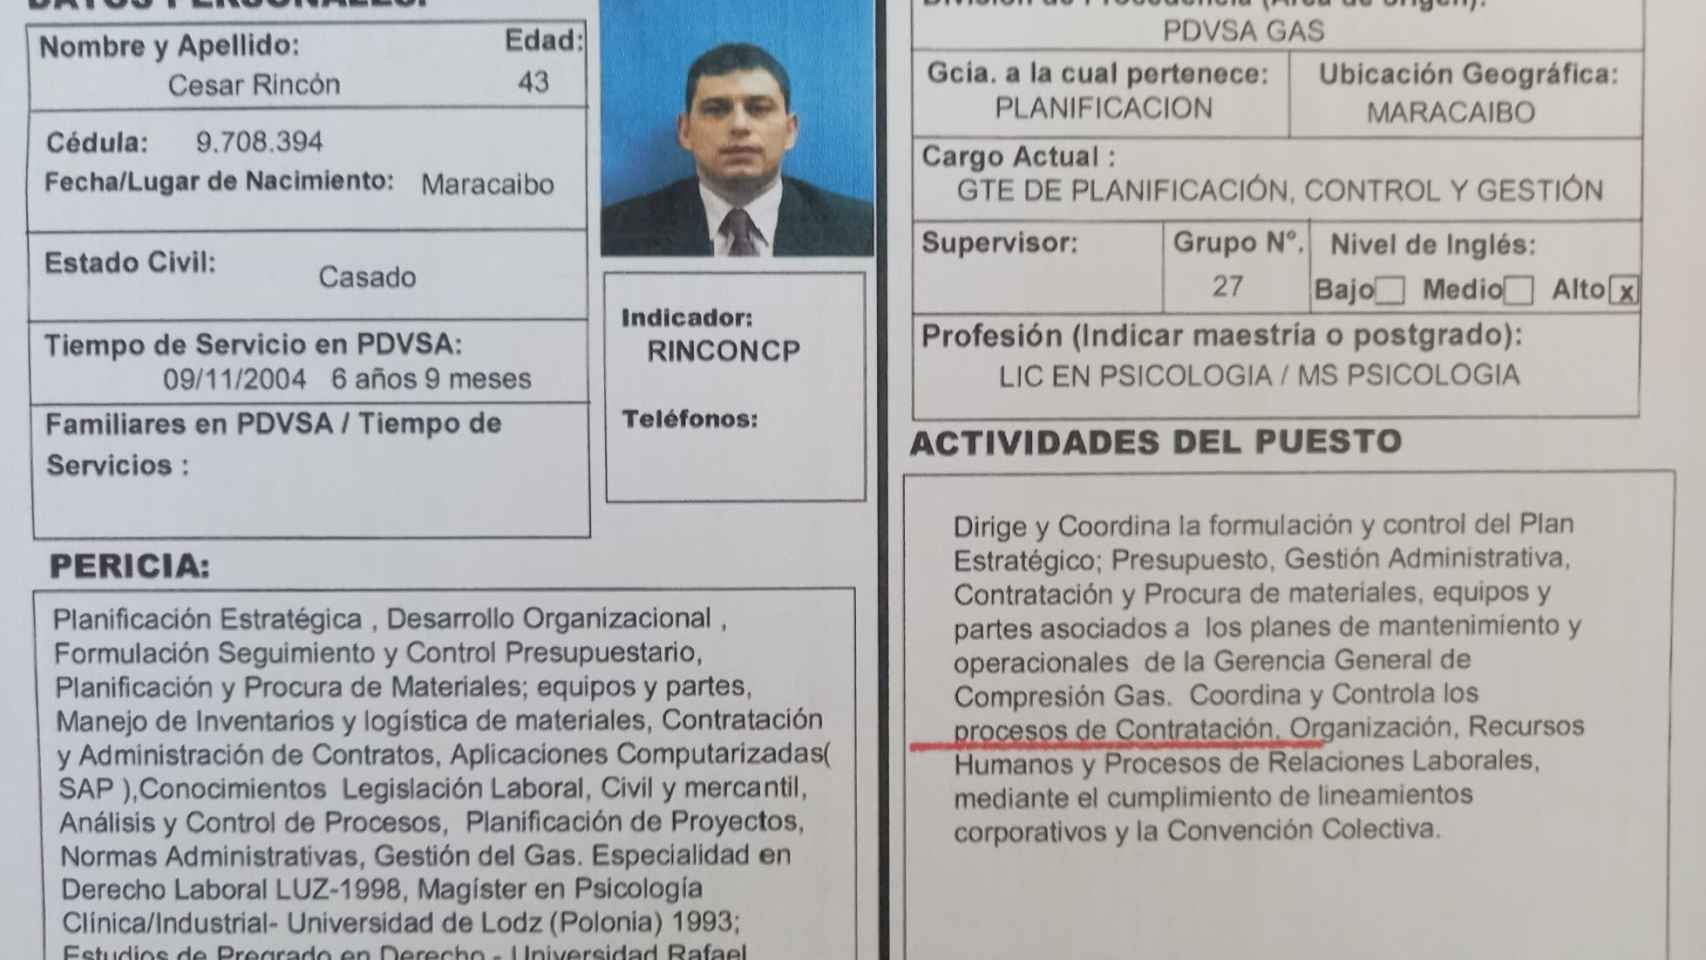 Ficha de César Rincón Godoy (hoy en prisión en EEUU) como directivo de PDVSA.